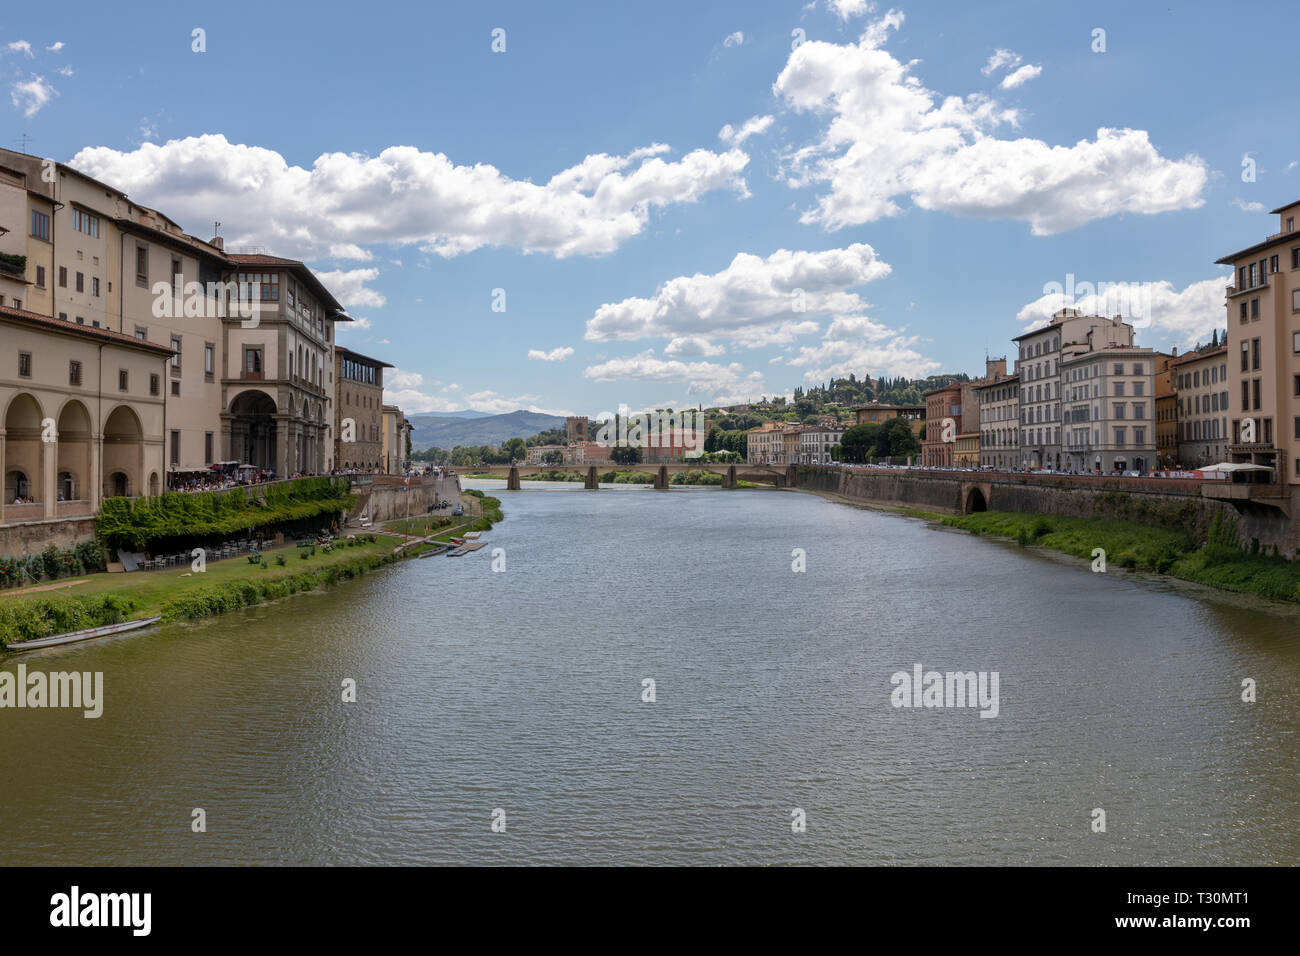 Vue panoramique sur le centre historique de la ville de Florence et l'Arno avec pont en Italie. Journée d'été et le bleu ciel. Banque D'Images